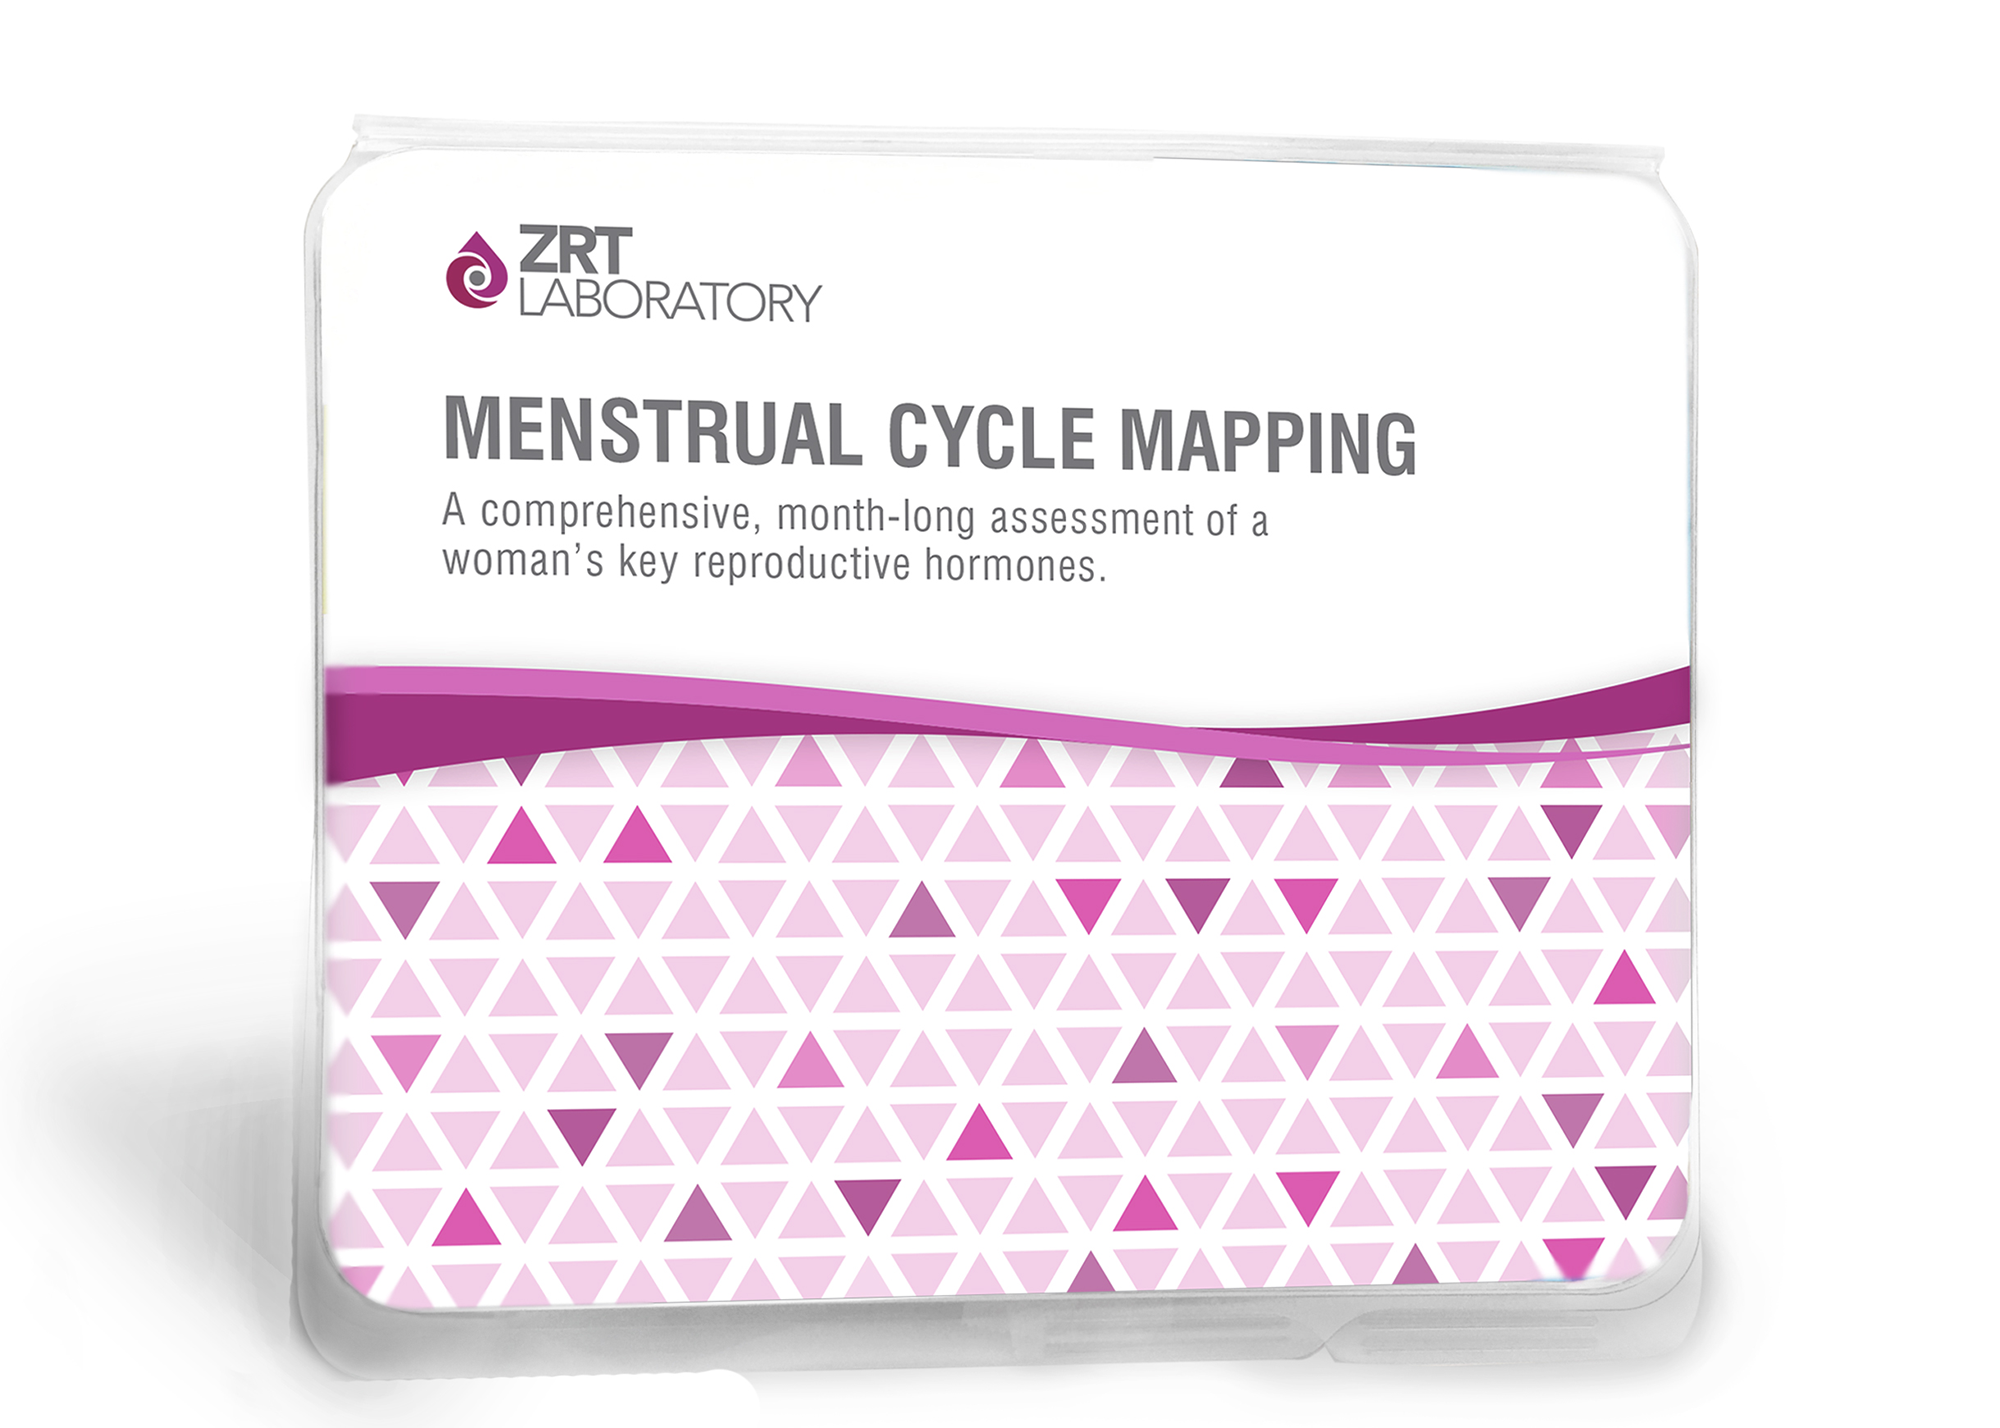 ZRT Laboratory Menstrual Cycle Mapping Kit